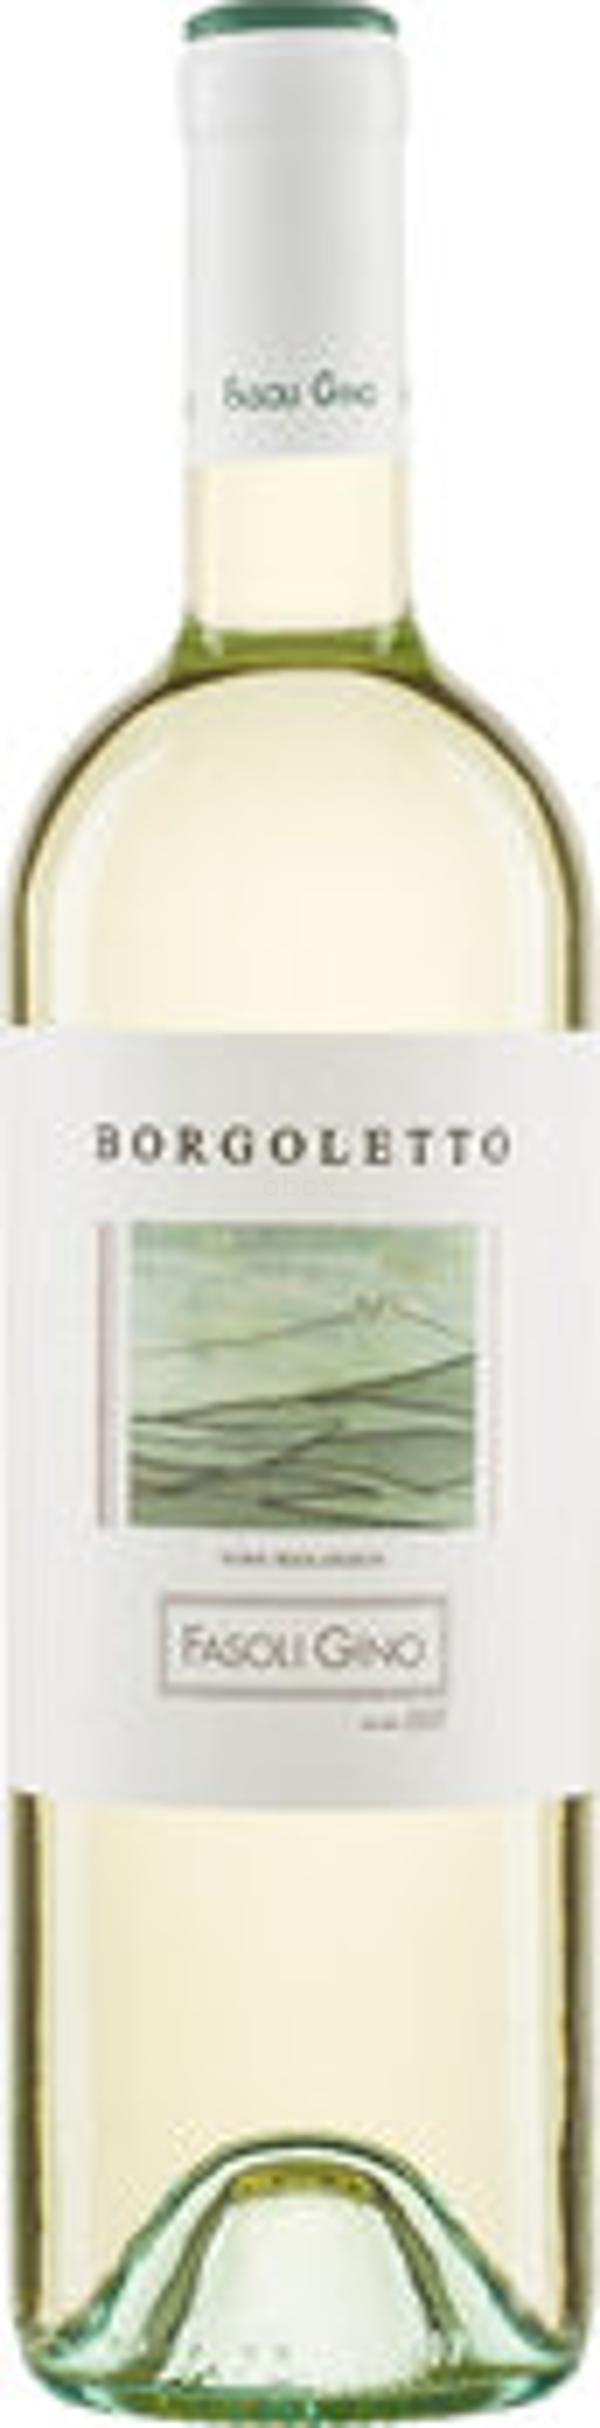 Produktfoto zu 'Borgoletto' Soave DOC  Fasoli